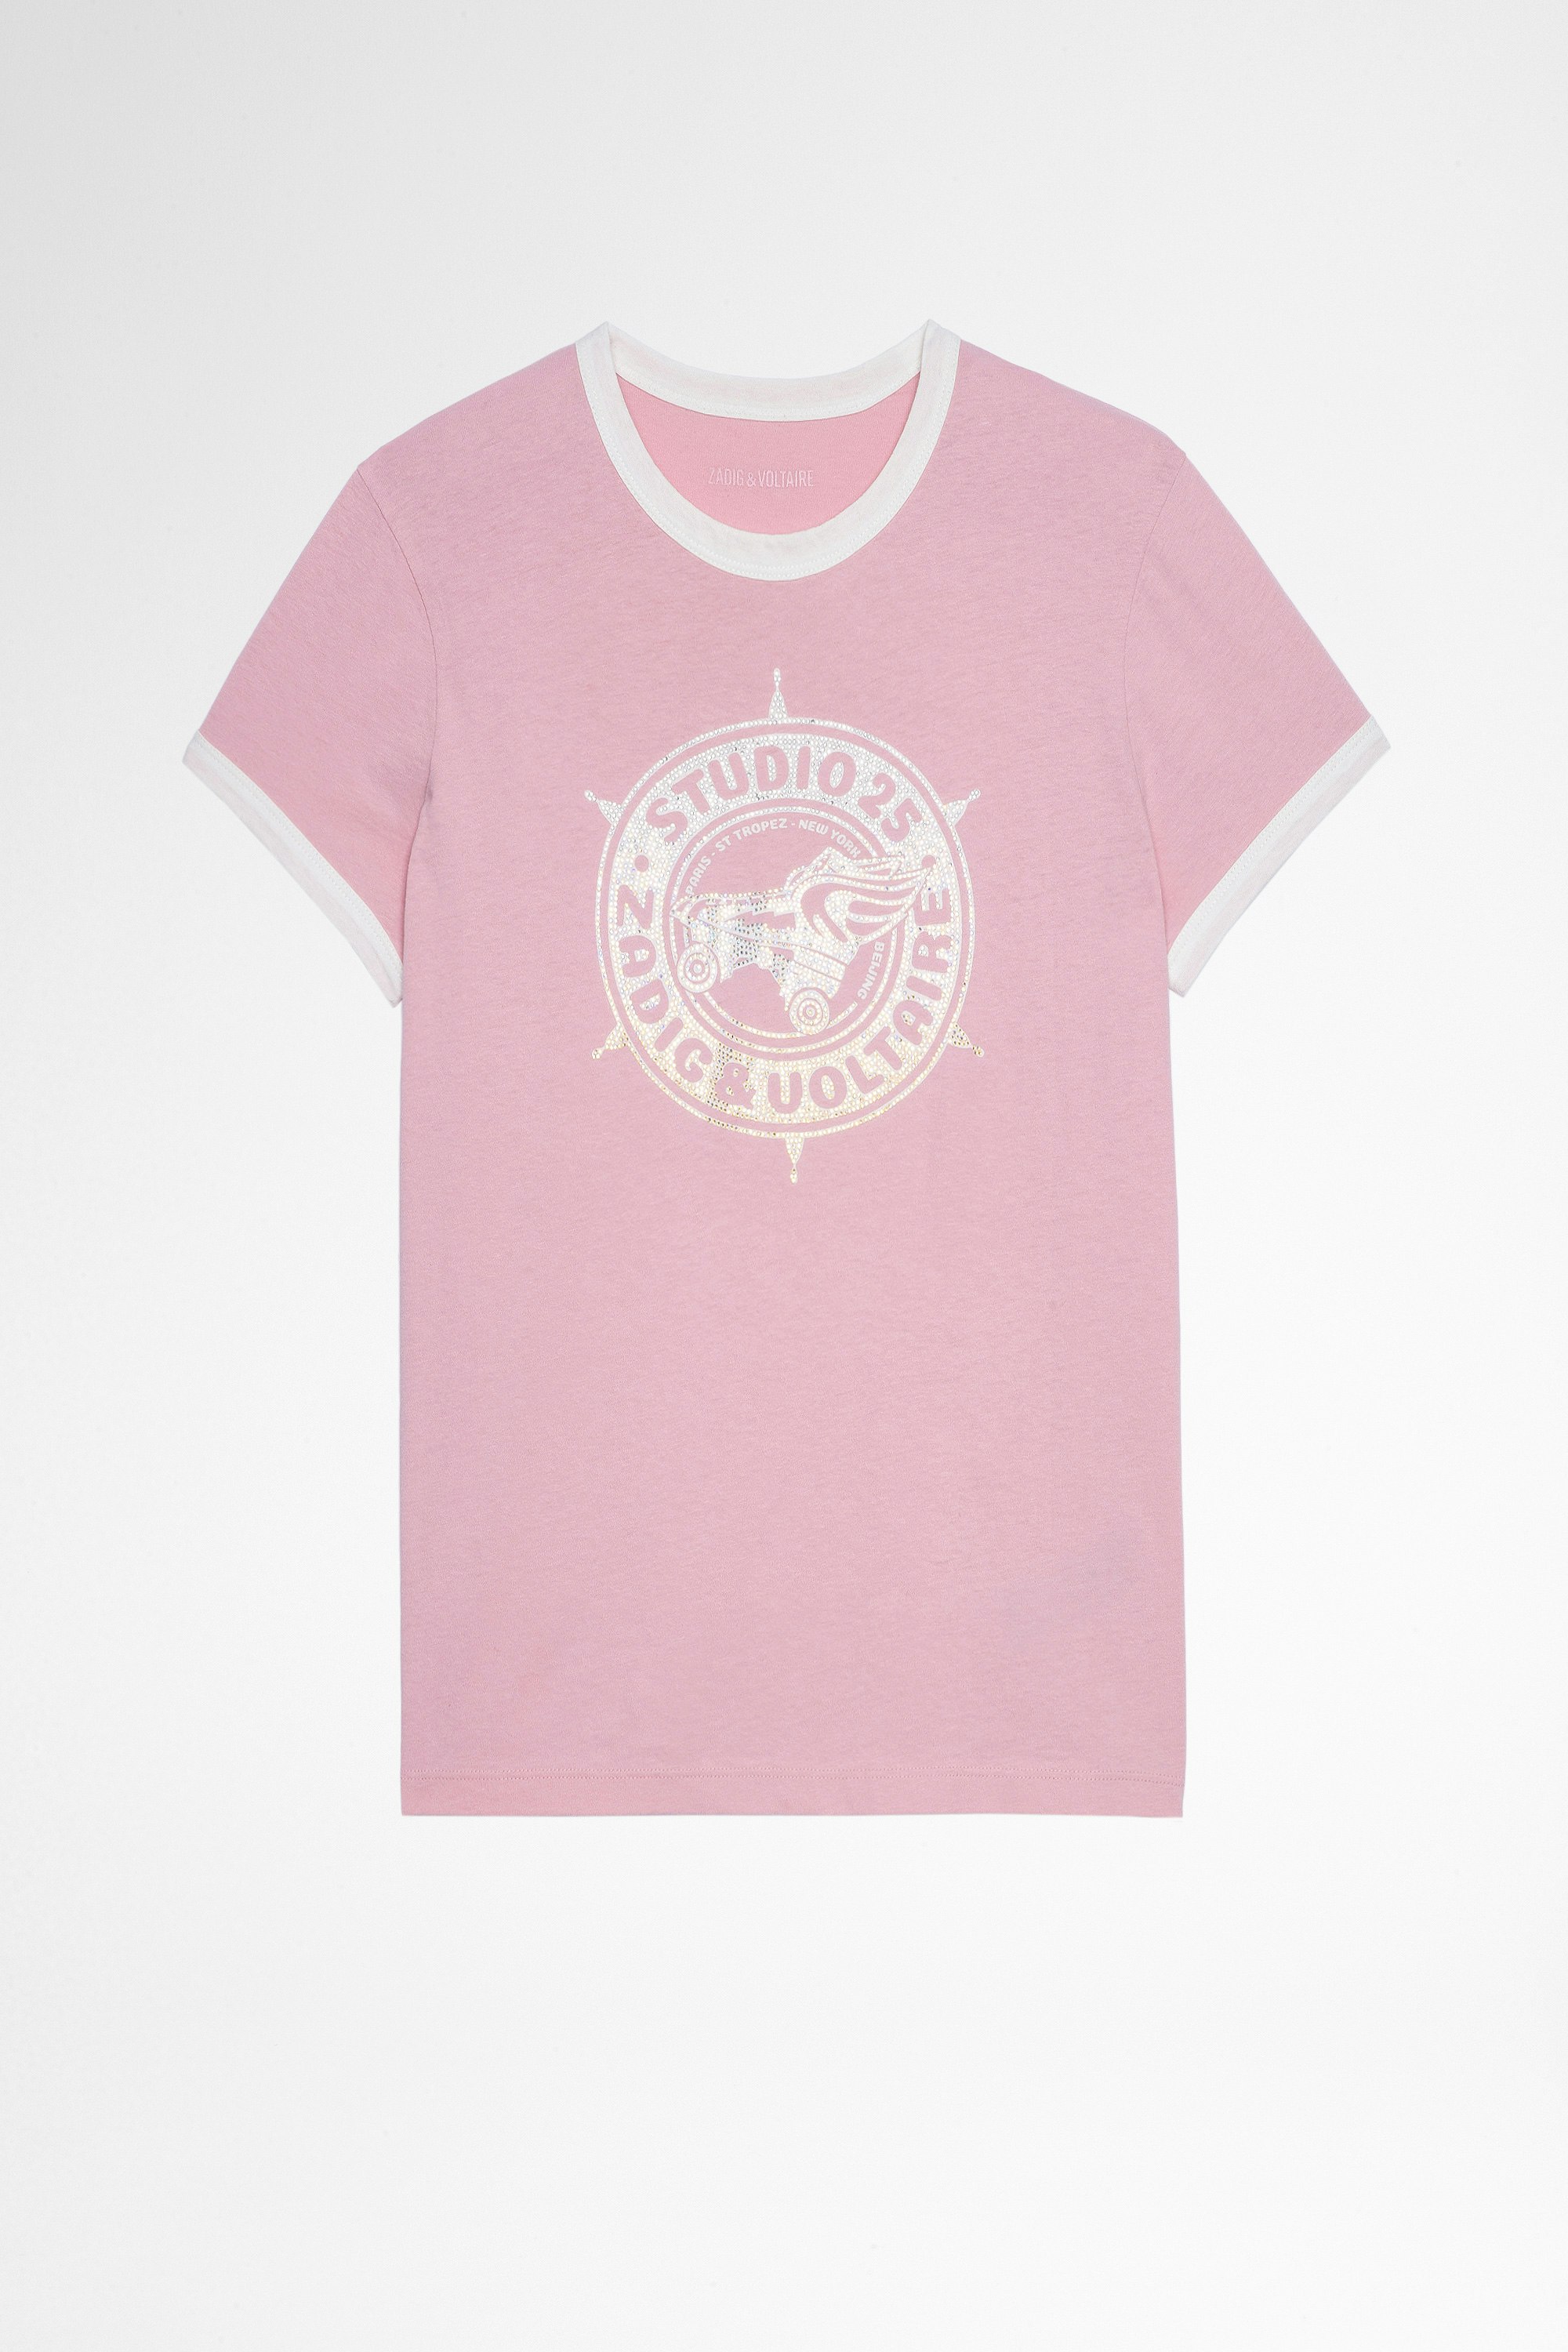 Camiseta Zoe Studio 25 Strass Camiseta rosa de algodón con impresión de Studio 25 cubierta de cristales, para mujer